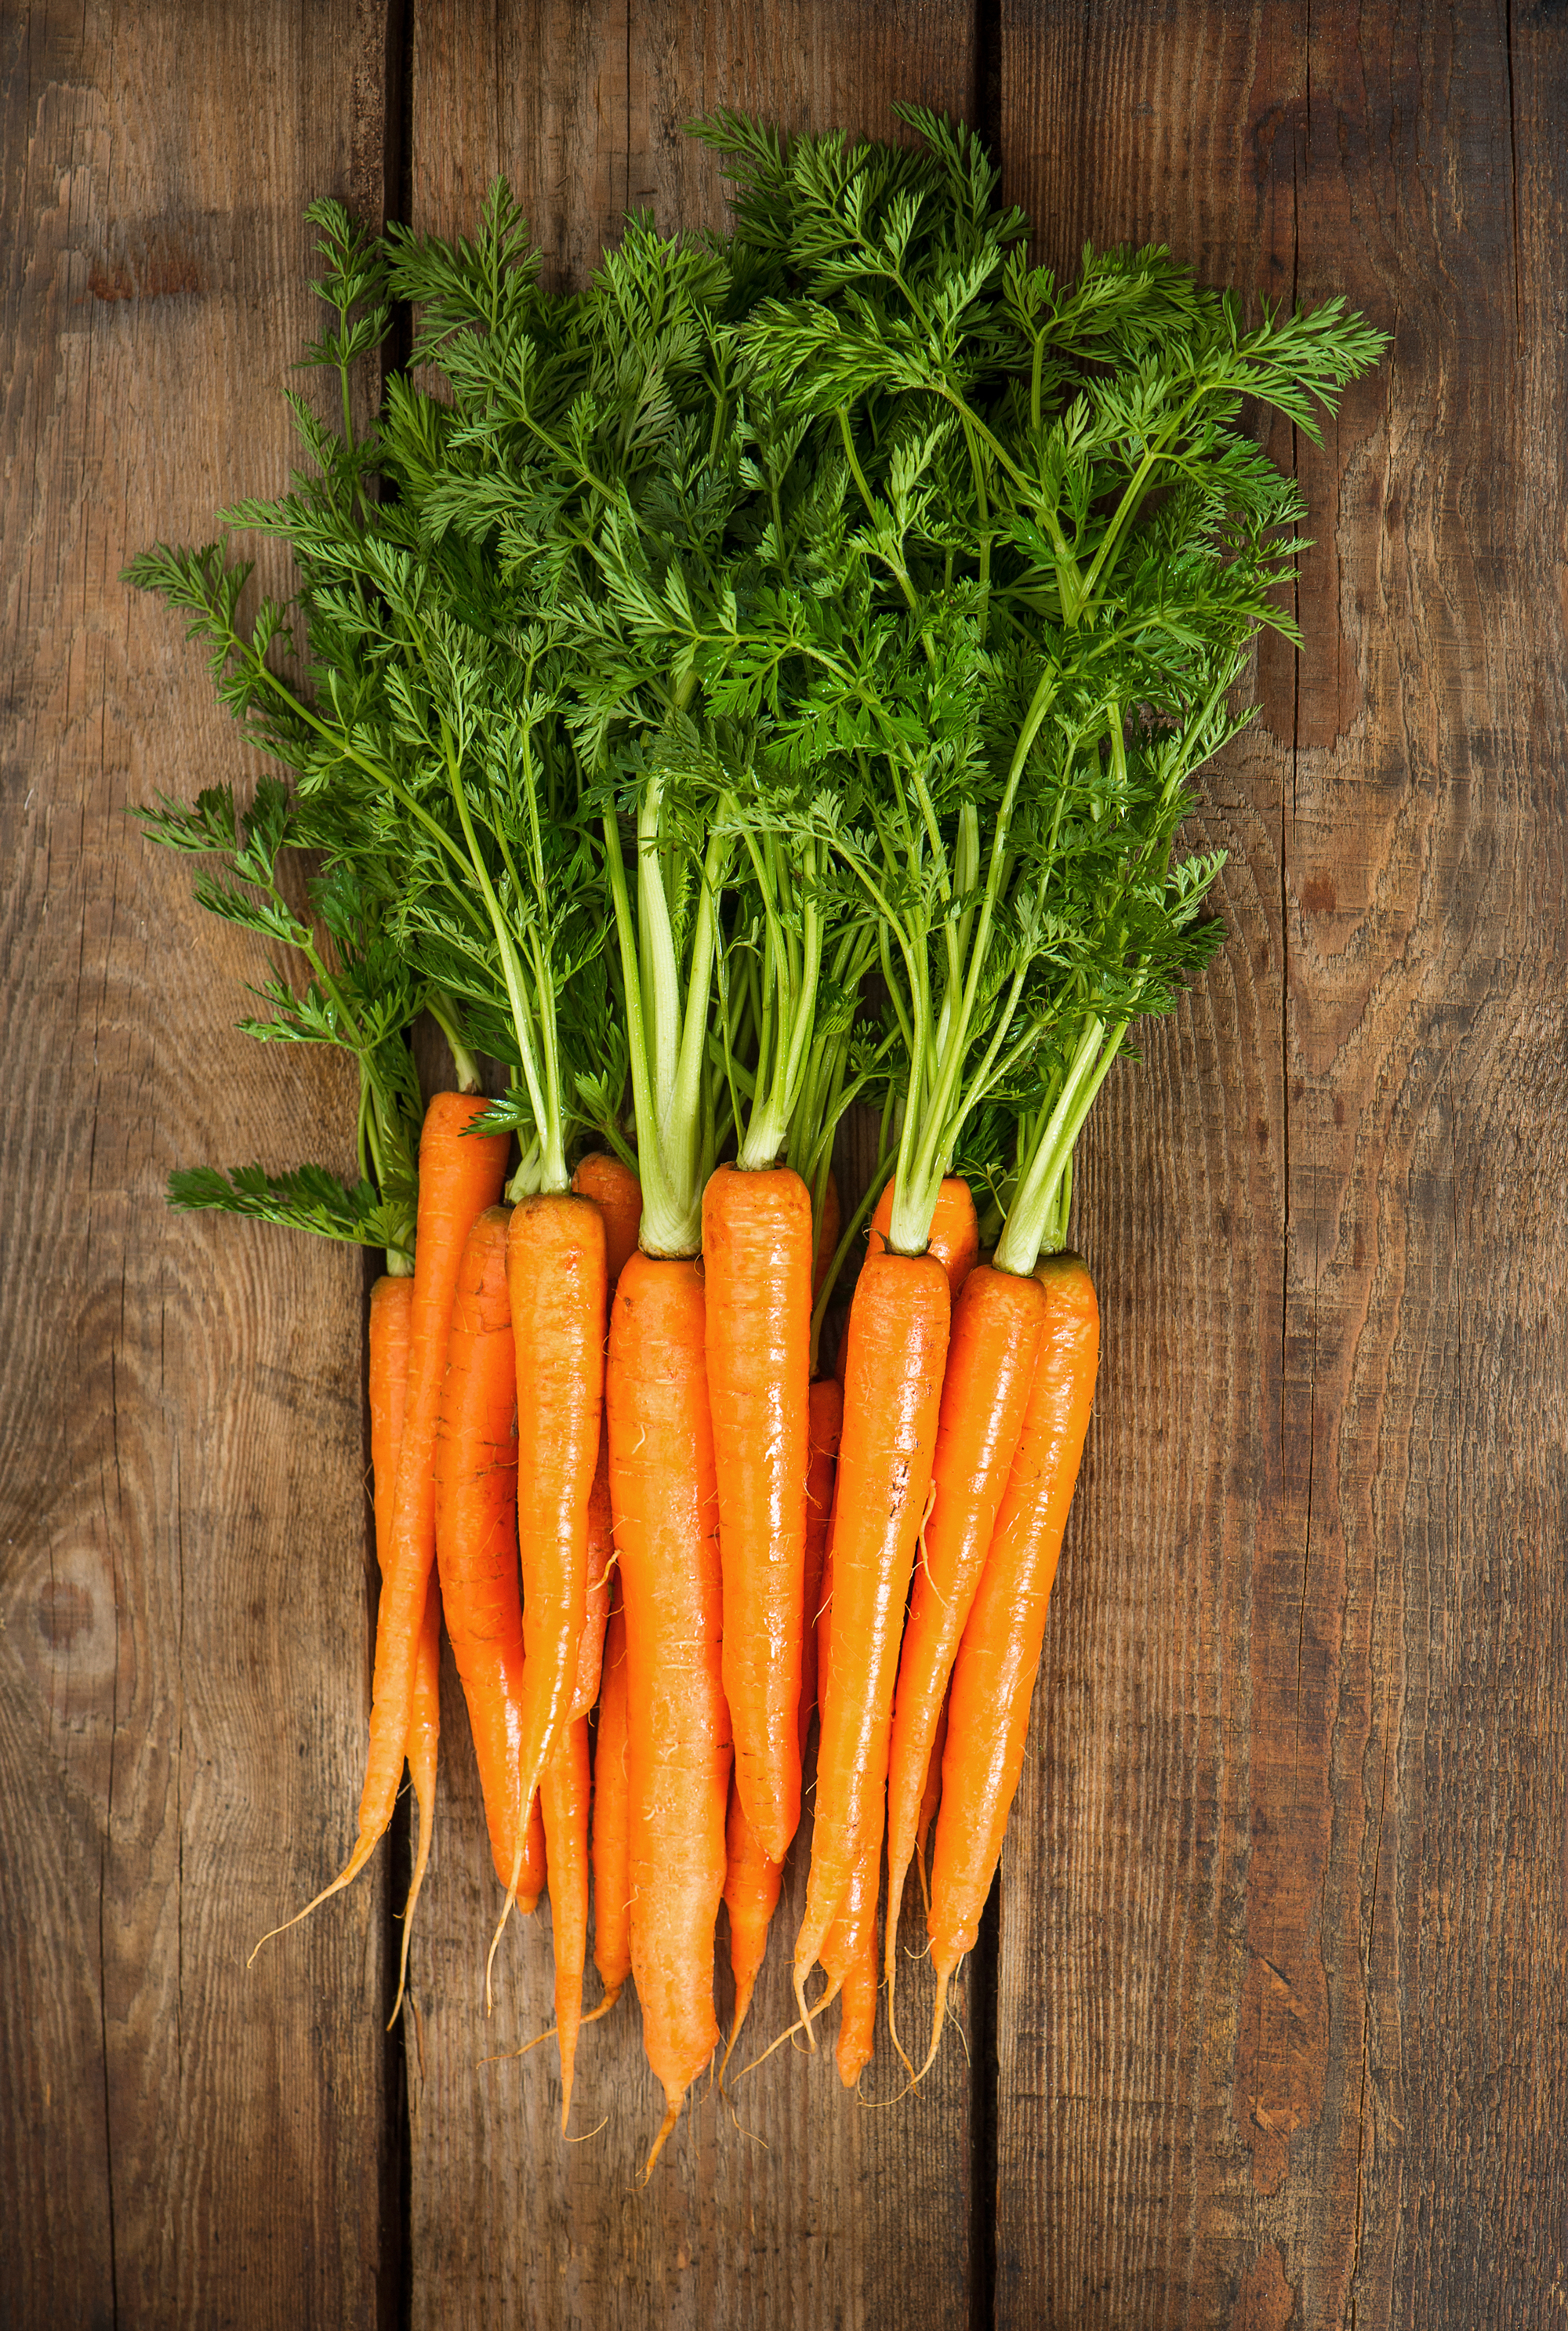 Skal jeg spise fedt til gulerødder? Aktiv Træning